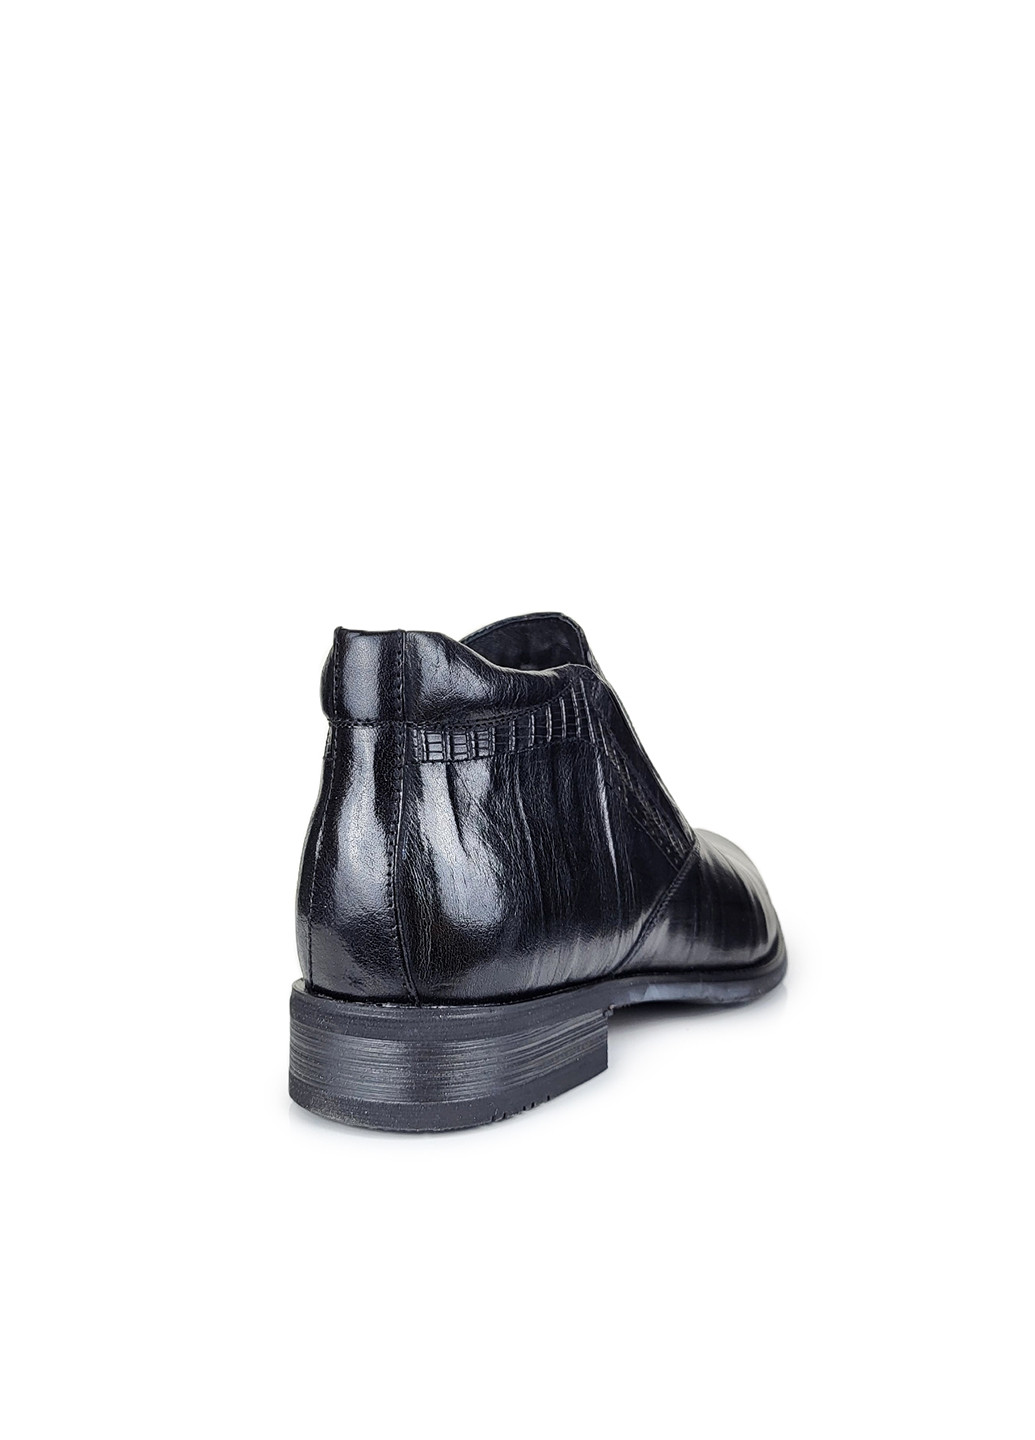 Черные зимние ботинки зимние мужские куртки из натуральной кожи с натуральным мехом черные,,d755015-101черкб, 39 Ronny